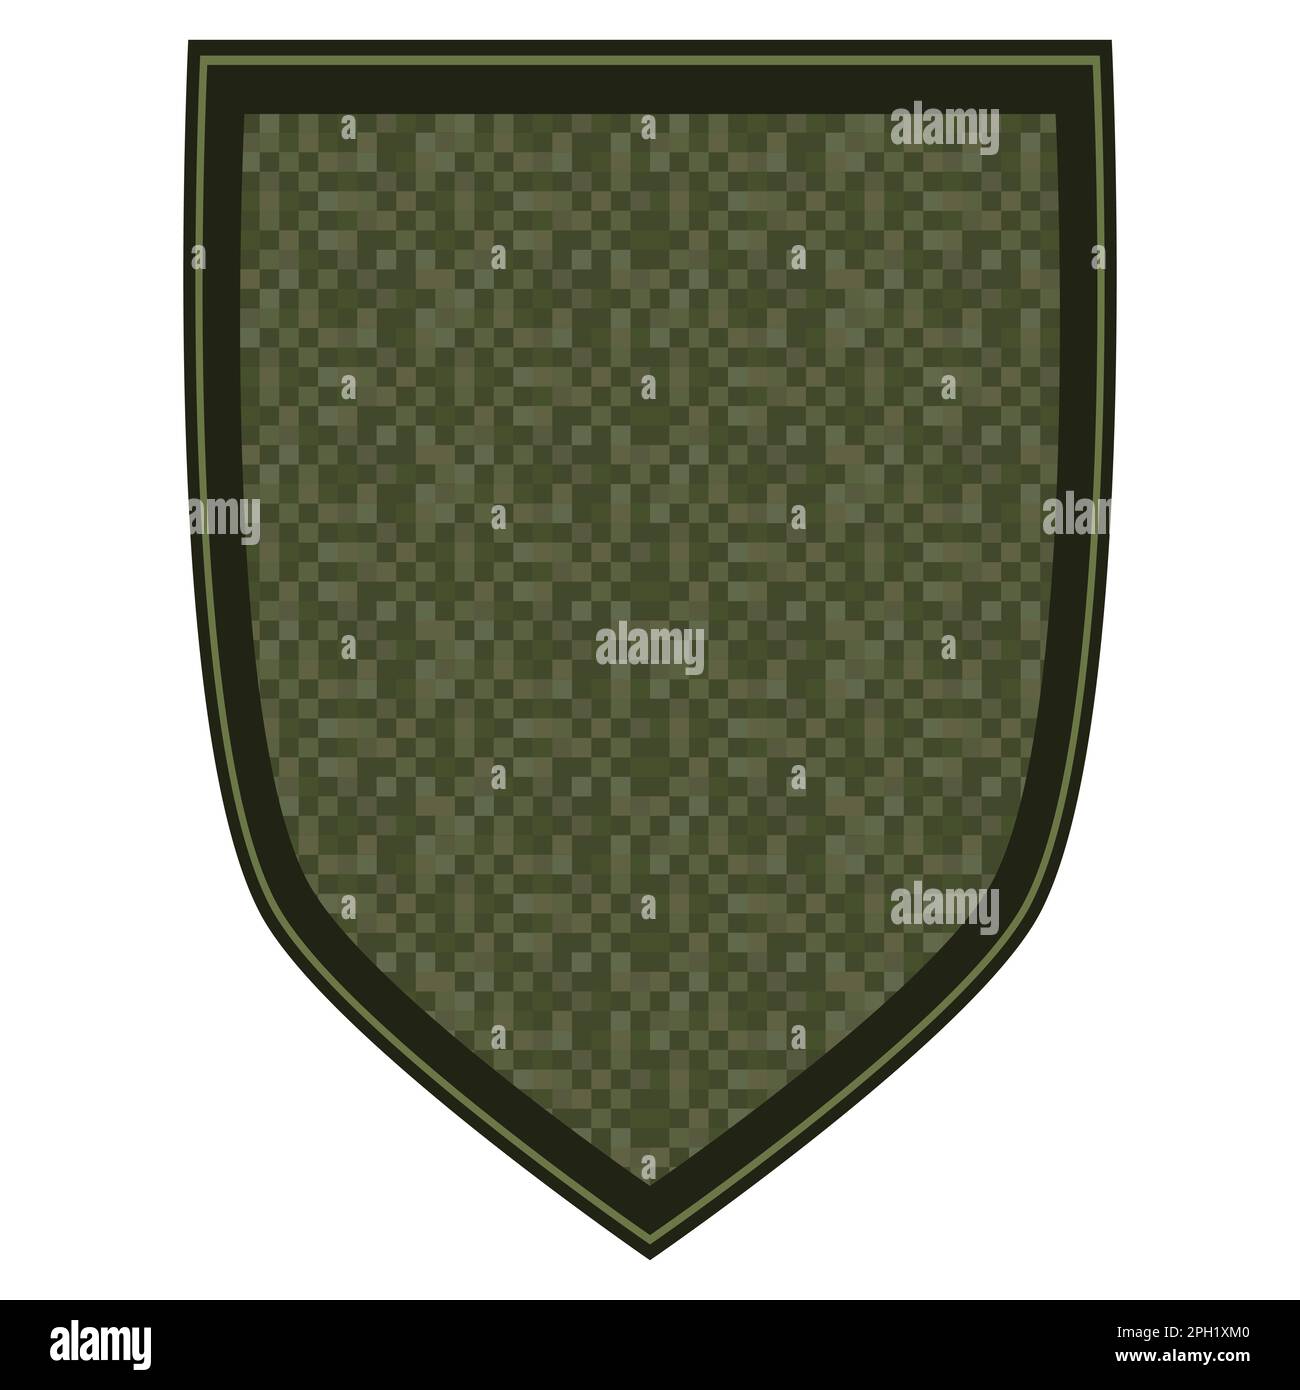 Das grüne Militär ist ein Schulterabzeichen. Armeesoldat Chevron. Einheitliches Schild mit grüner Pixeltarnung. Farbenfrohe Vektordarstellung isoliert auf weißem Ba Stock Vektor